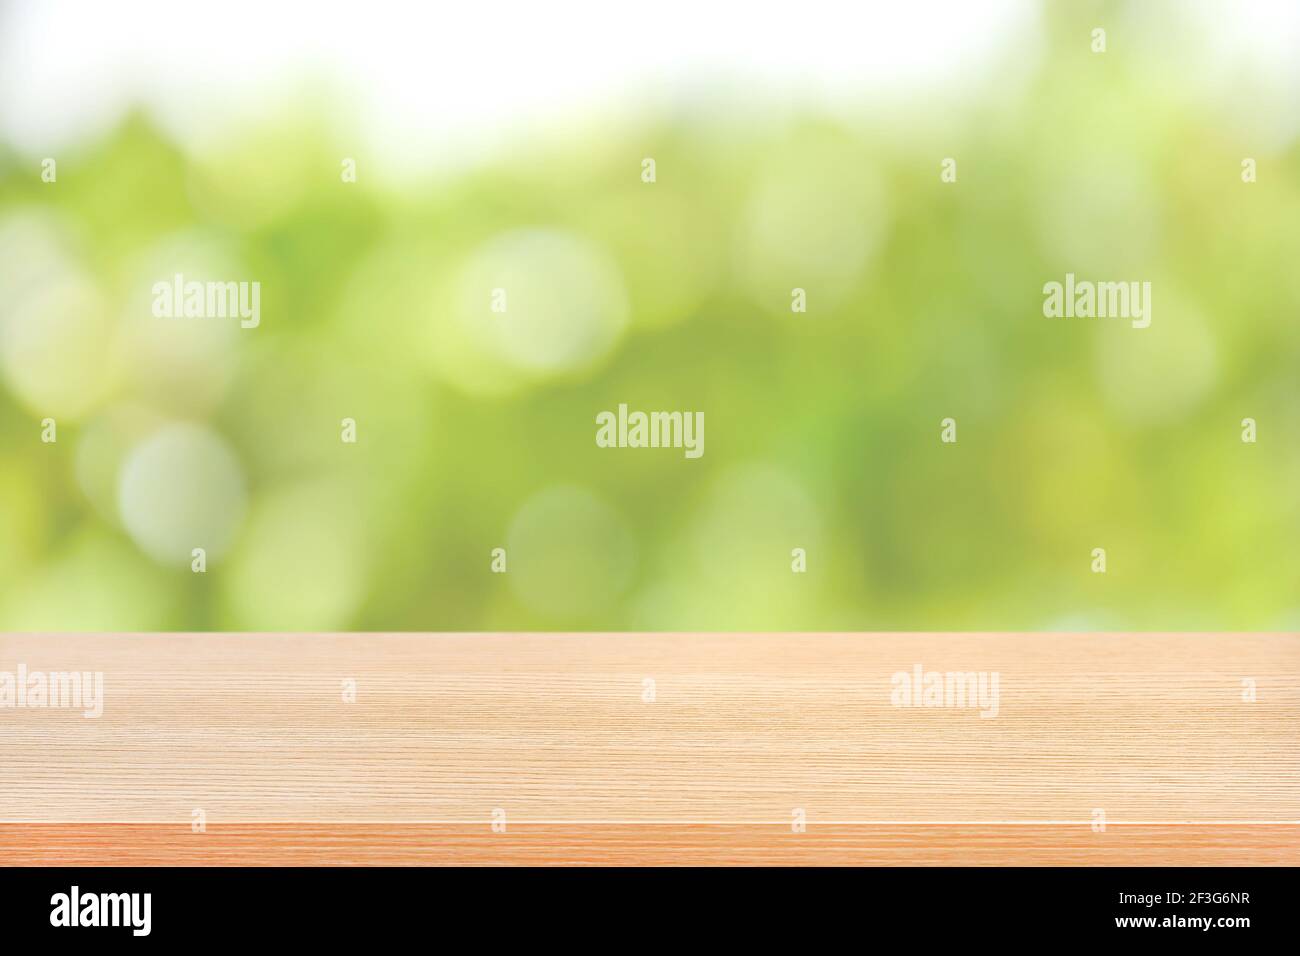 Holztischplatte auf grünem Bokeh abstrakter Hintergrund, weicher Ton - kann für Montage oder Anzeige Ihrer Produkte verwendet werden Stockfoto